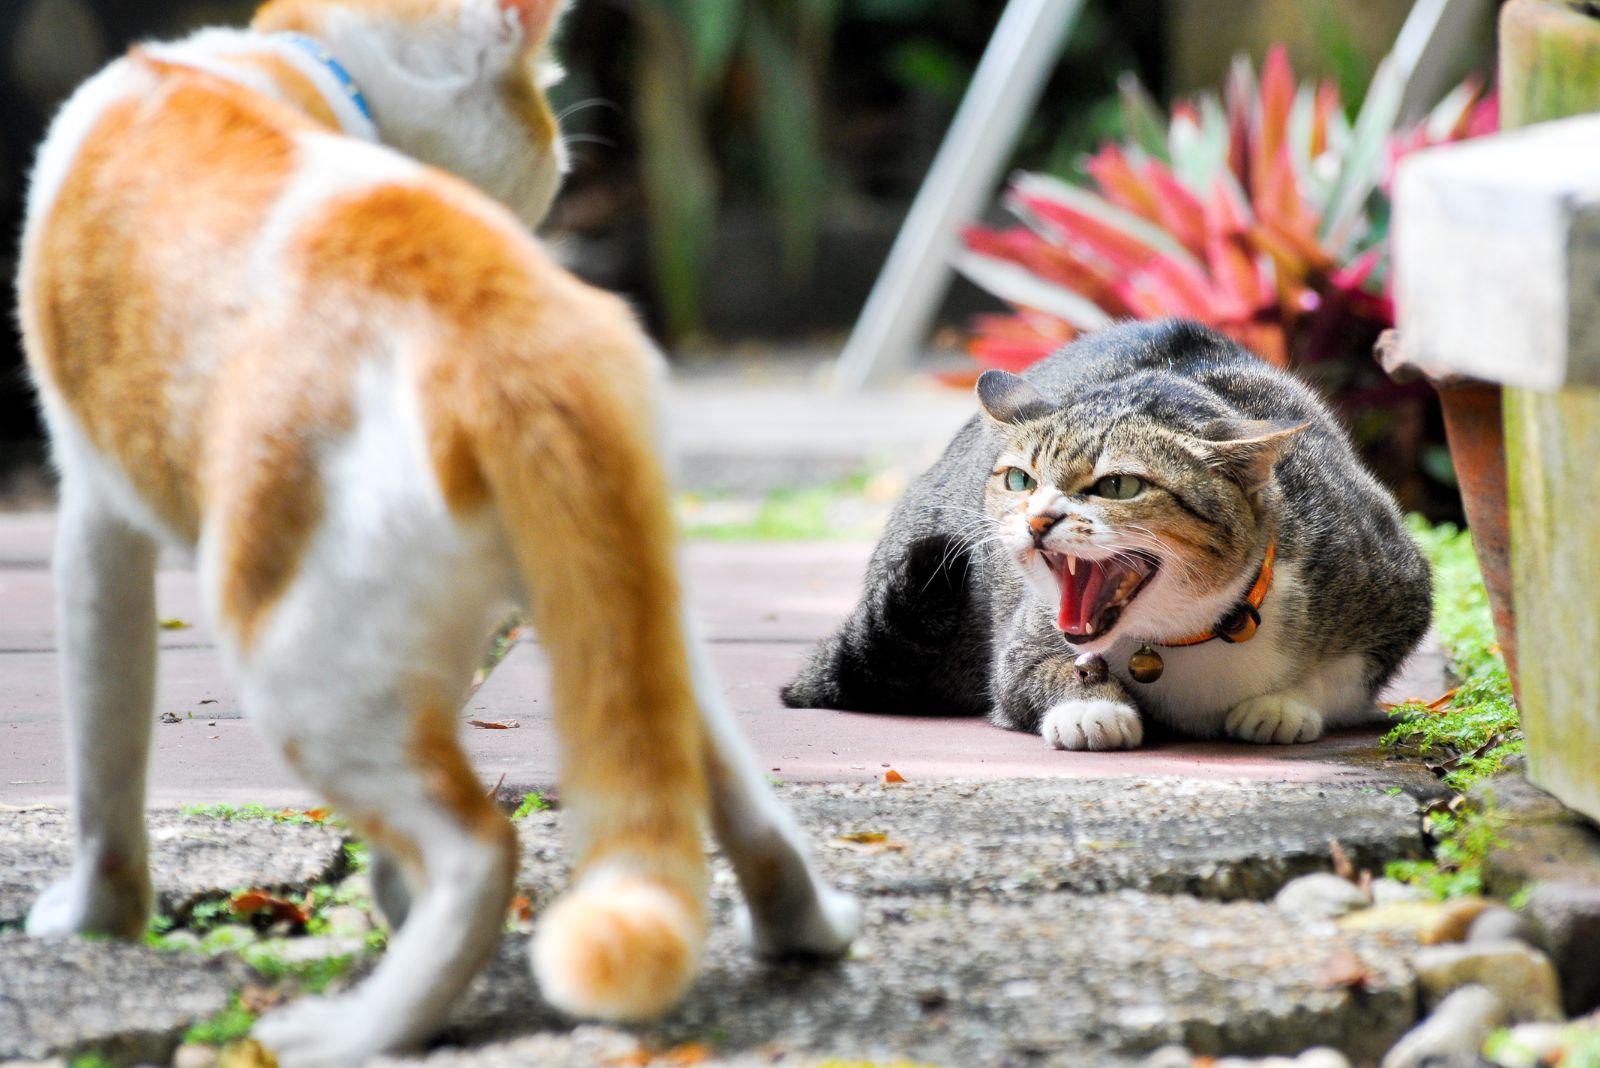 de kat vertoont agressief gedrag tegenover een andere kat